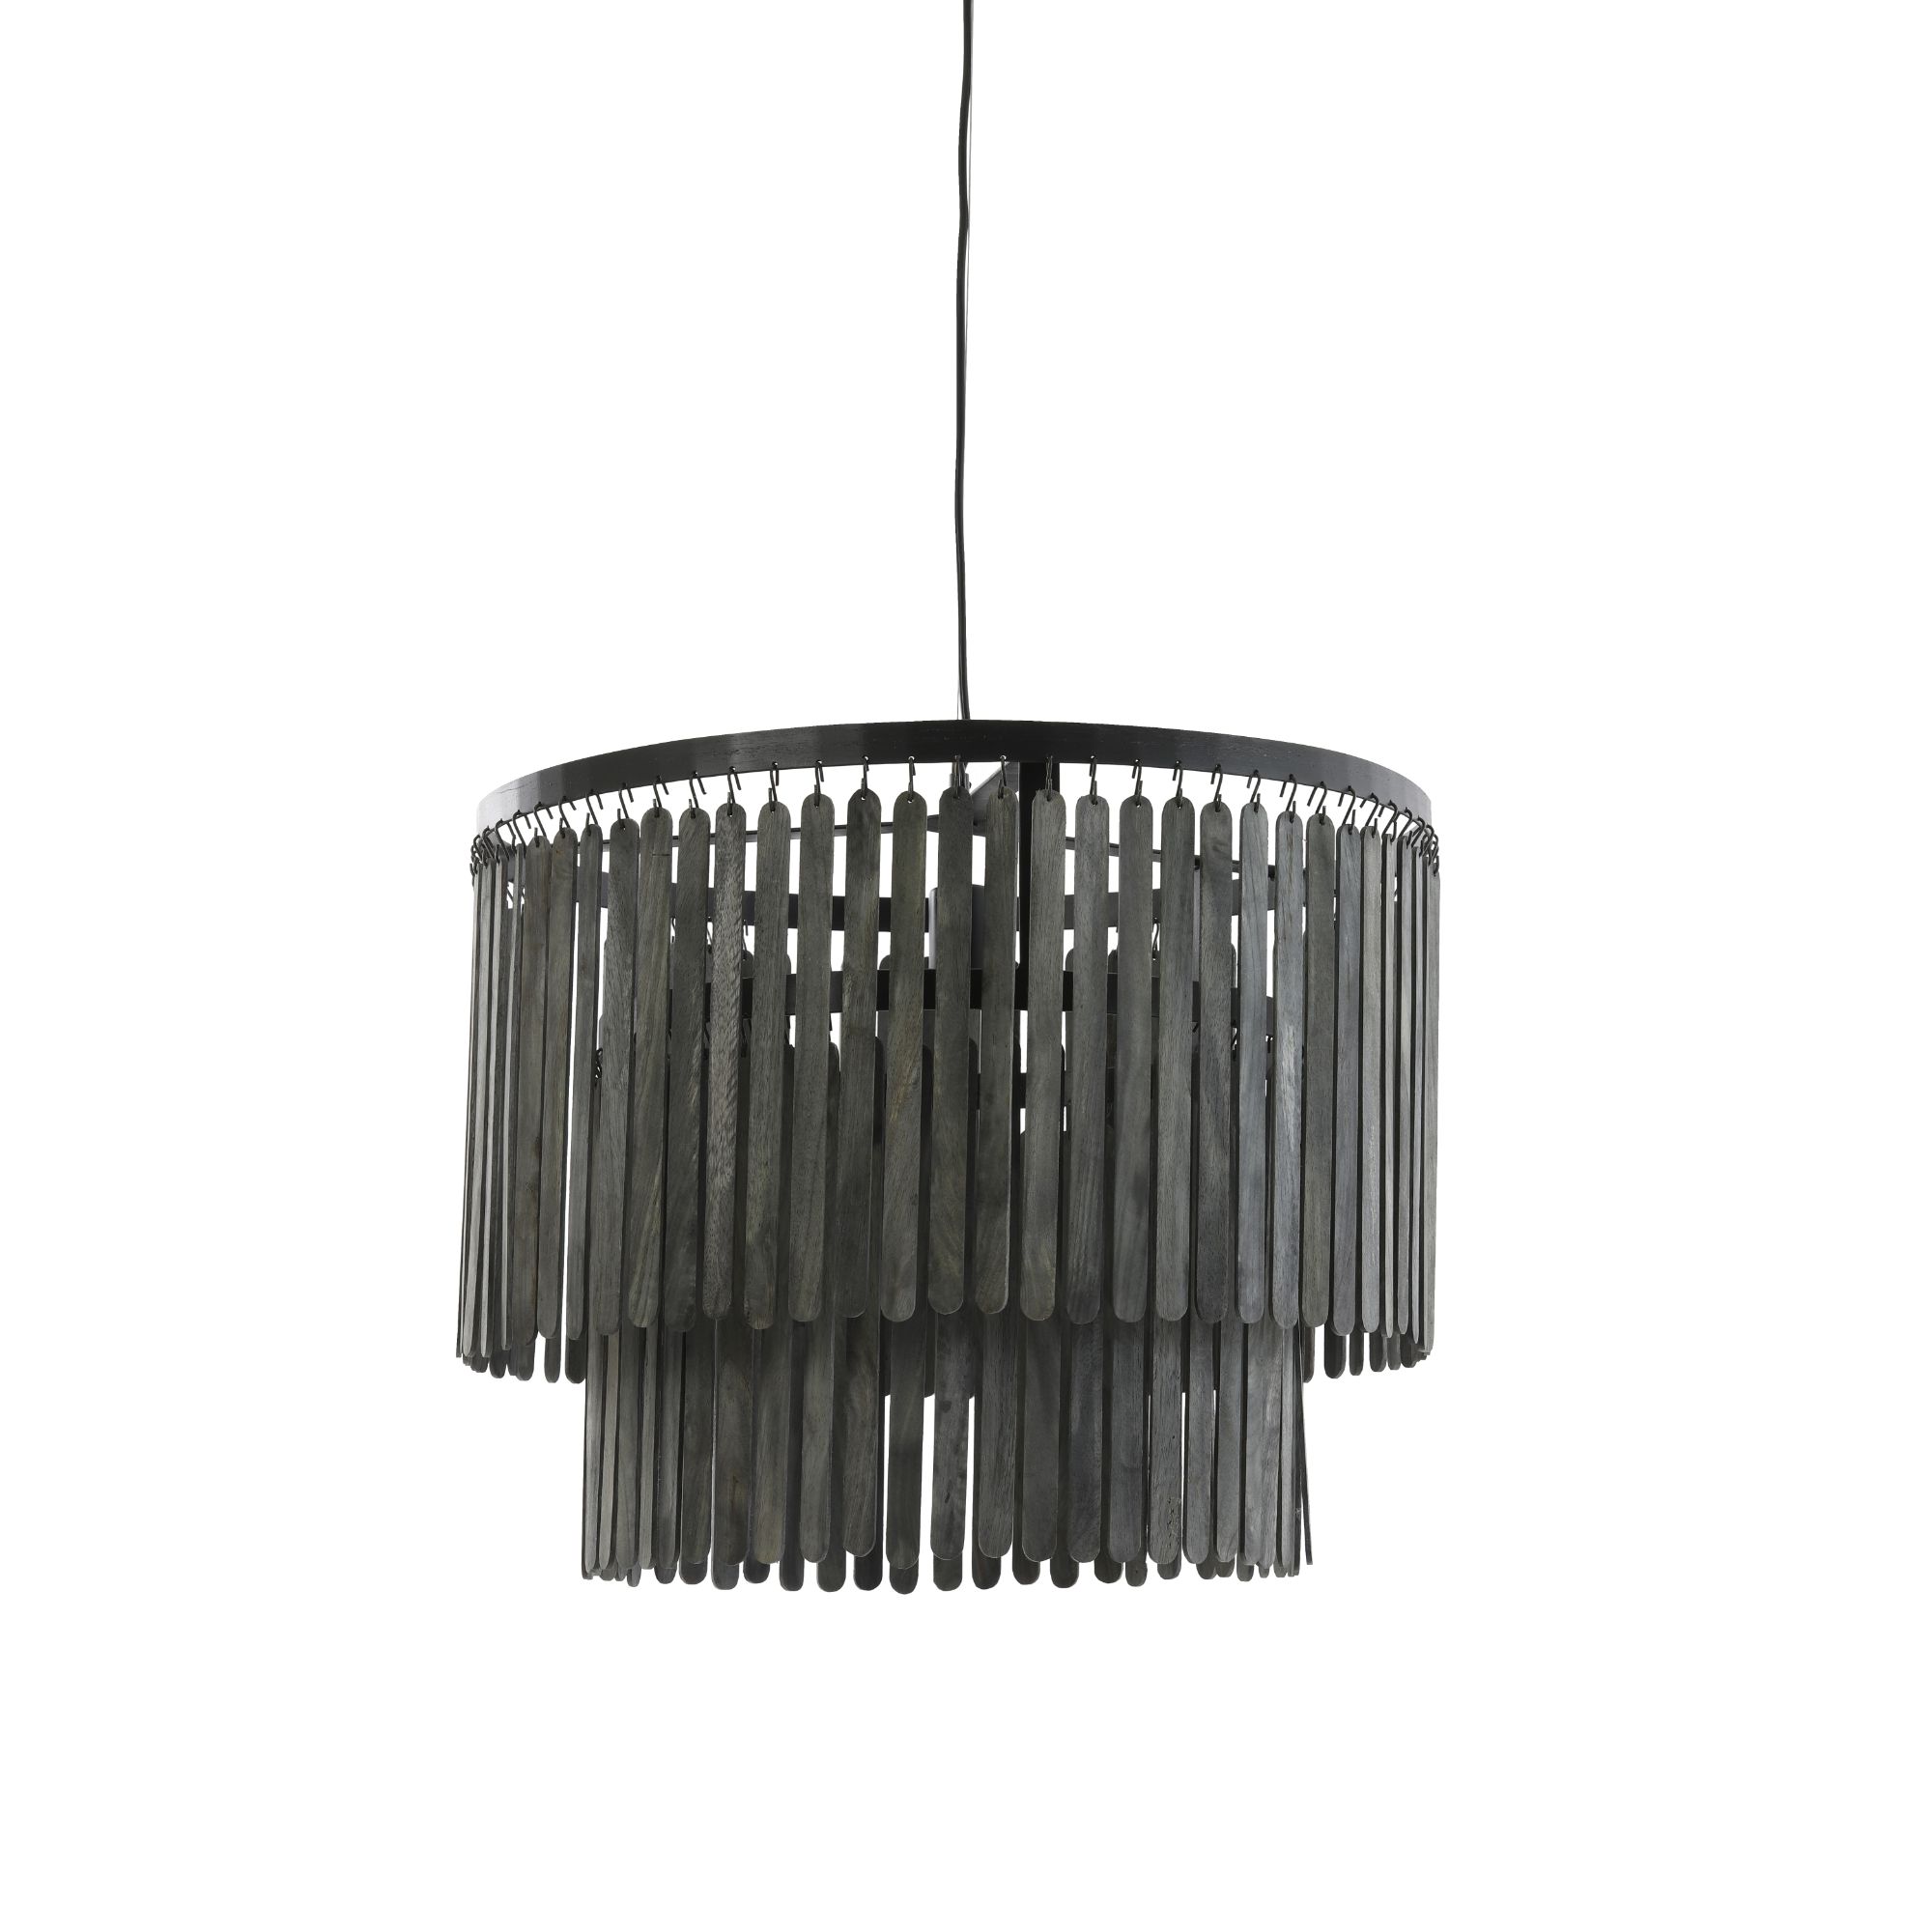 Light & Living hanglamp Ø45x43 cm GULAG hout mat zwart